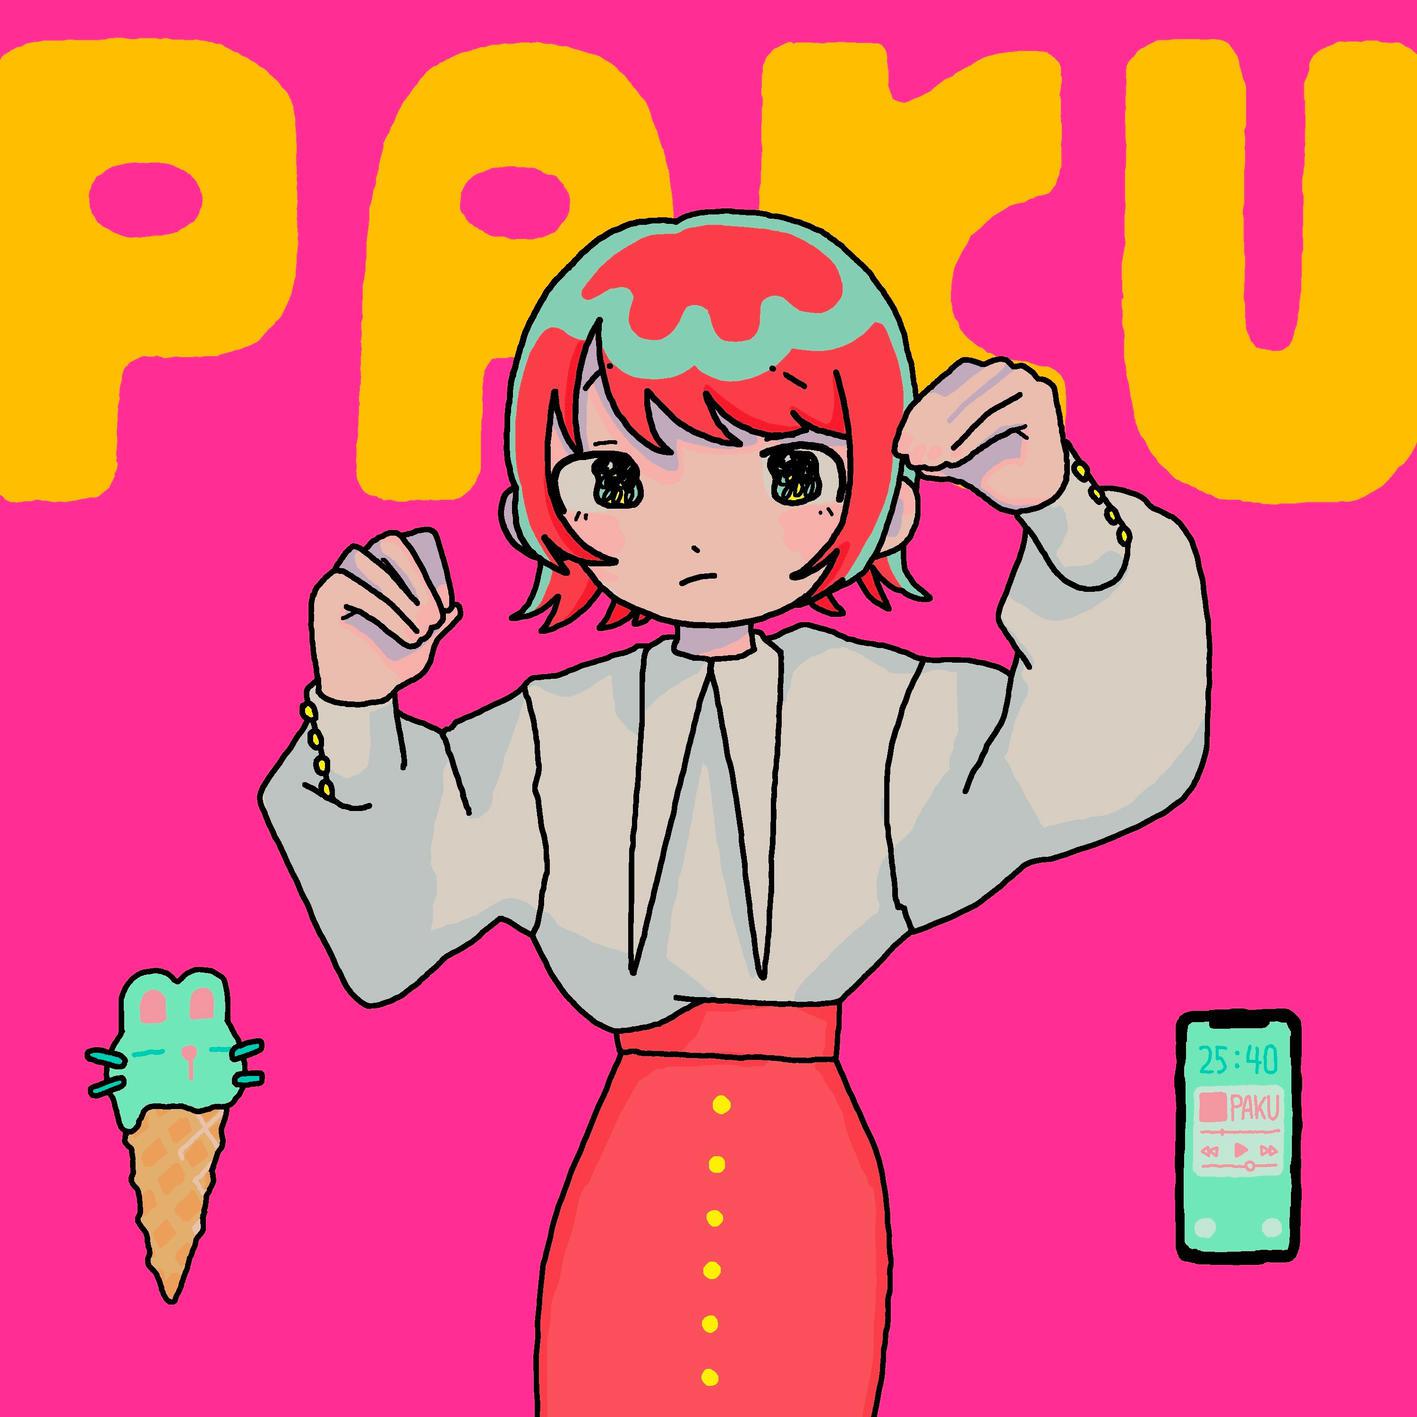 PAKU歌词 歌手asmi-专辑PAKU-单曲《PAKU》LRC歌词下载